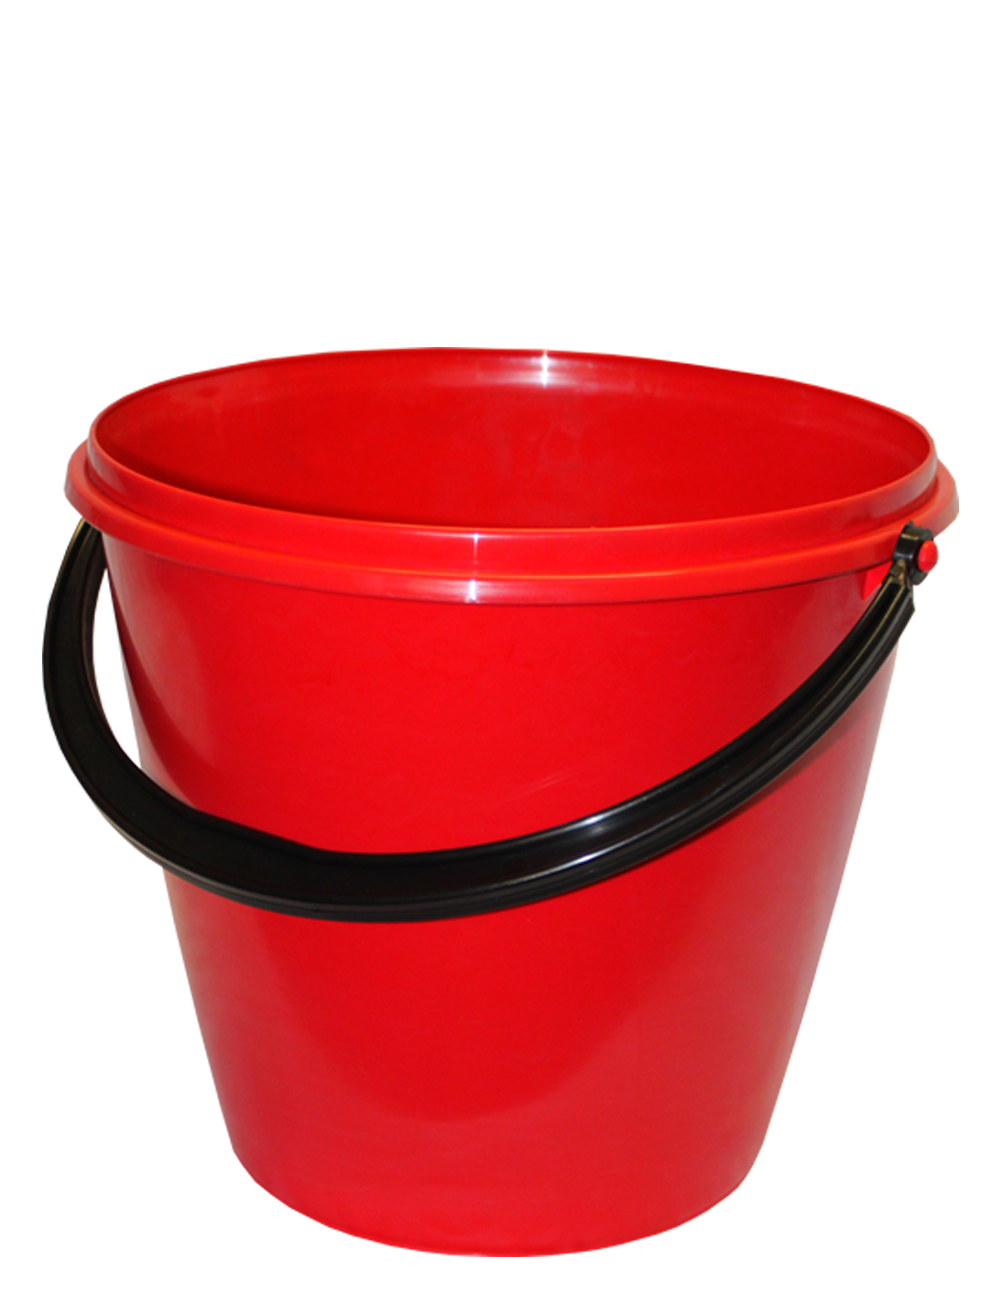 塑料红桶